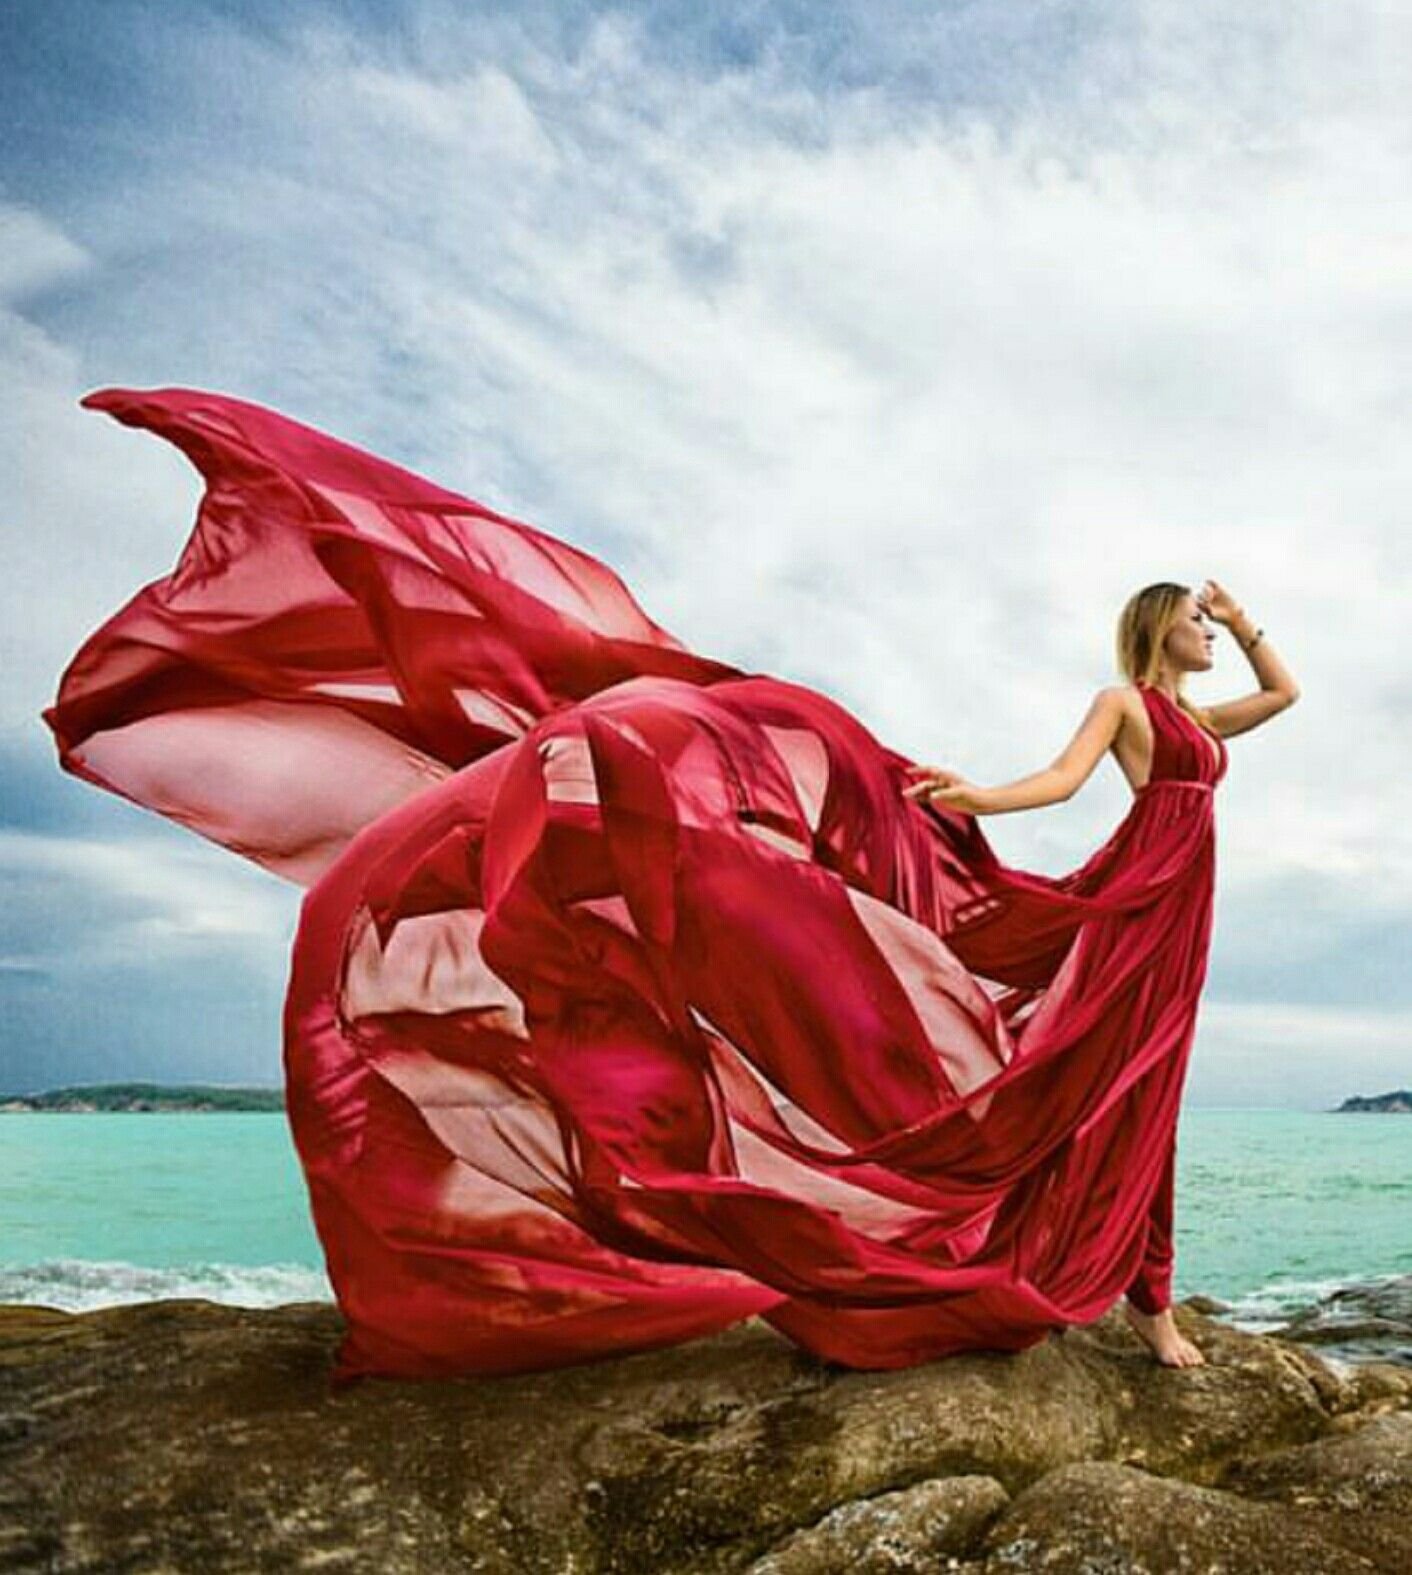 Платье развивающееся на ветру